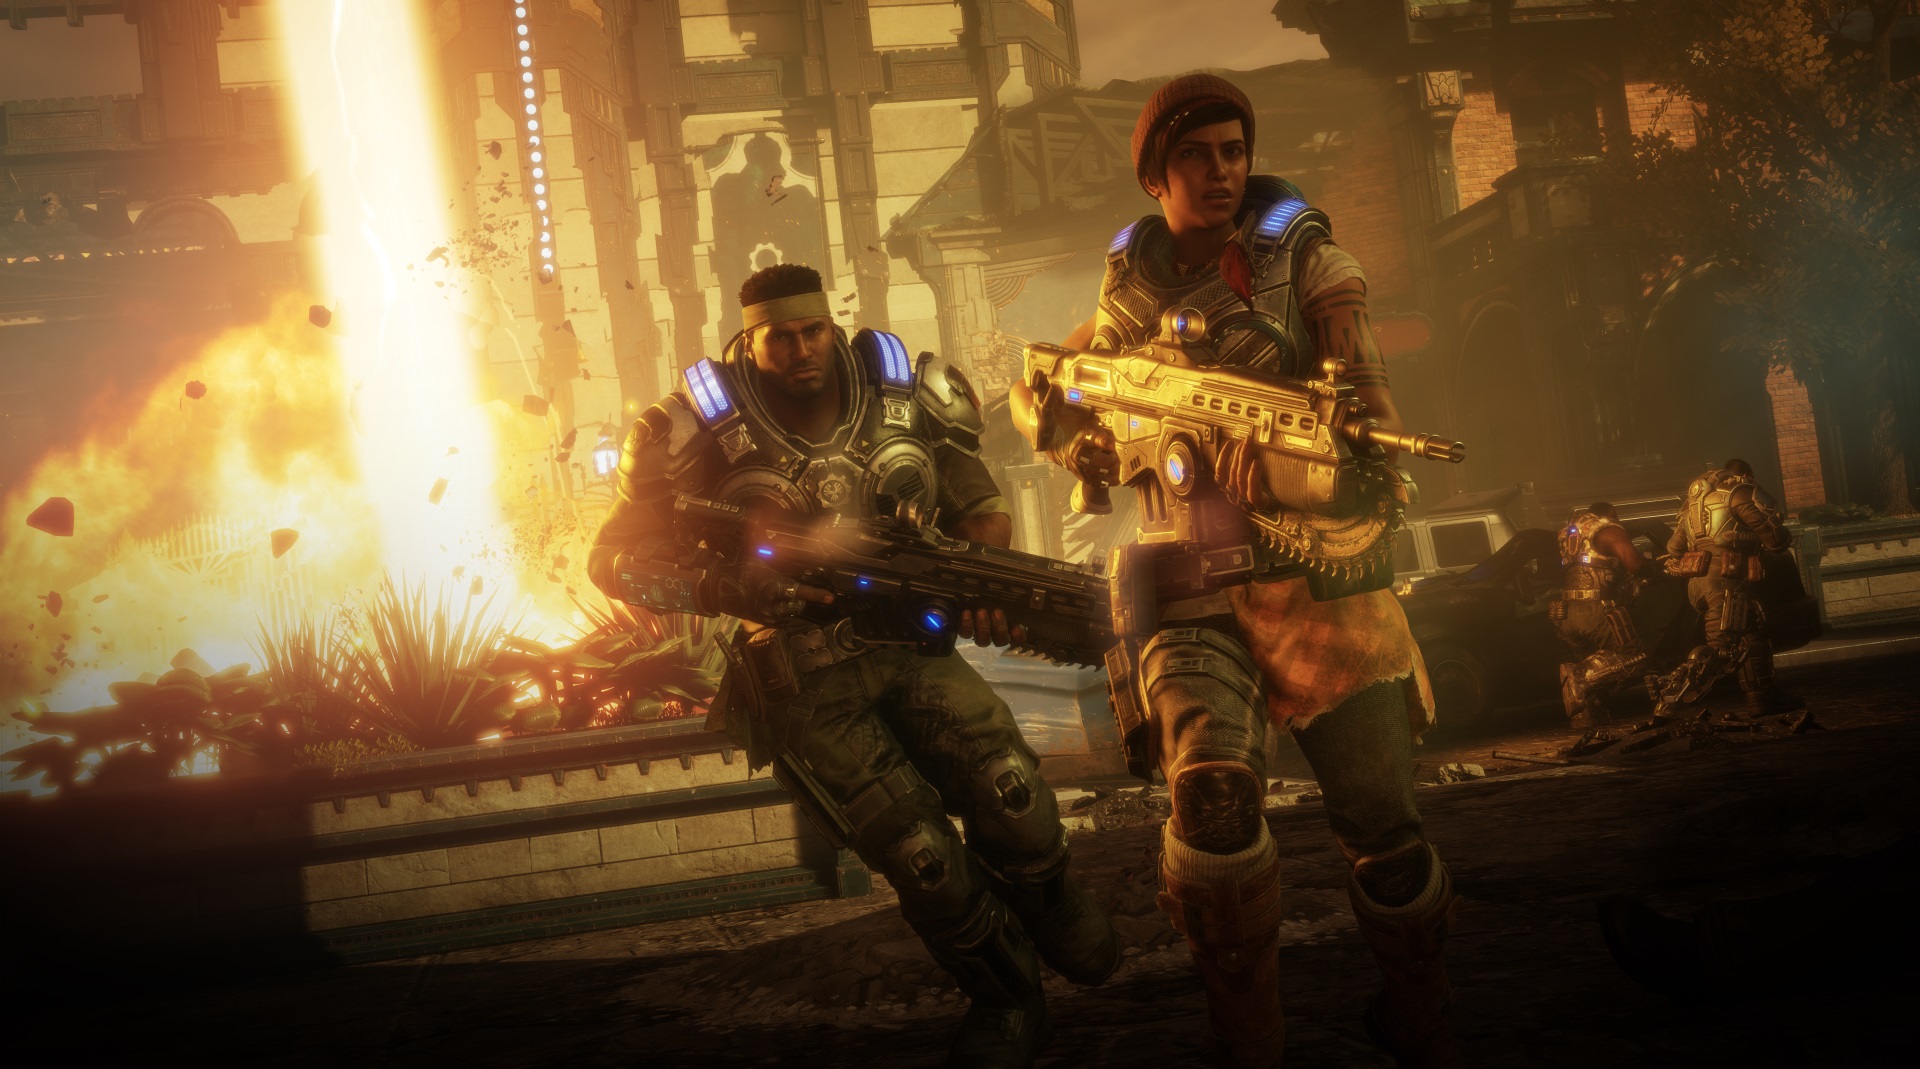 Setelah satu tahun yang tidak terkalahkan, Gears 5 merebut game post yang paling banyak dimainkan di Xbox One dari Fortnite